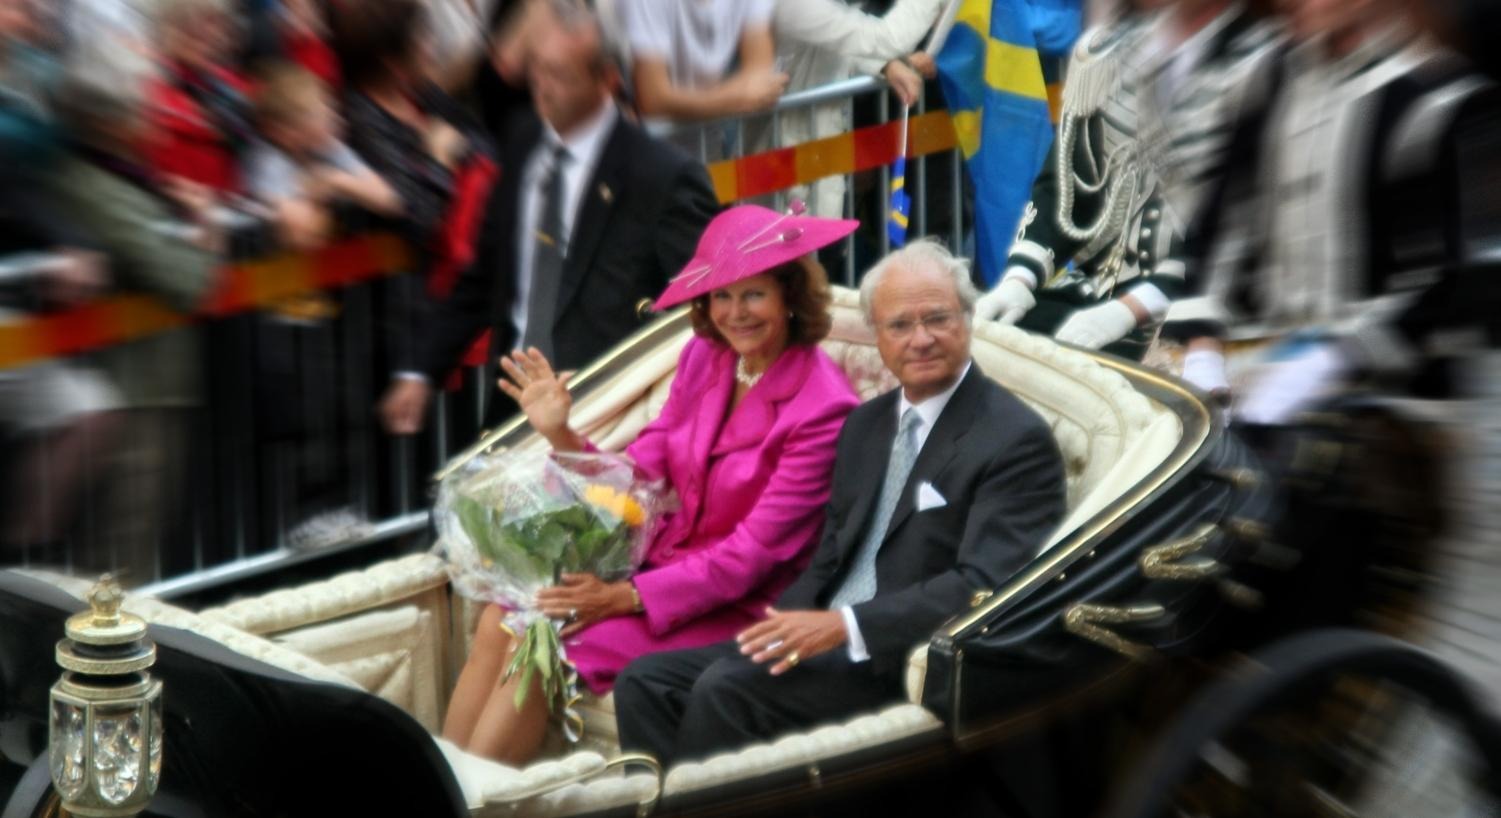 Bild på kungen och drottningen i öppen hästvagn, drottningen i rosa dräkt och kungen i kostym. Suddig omgivning. 